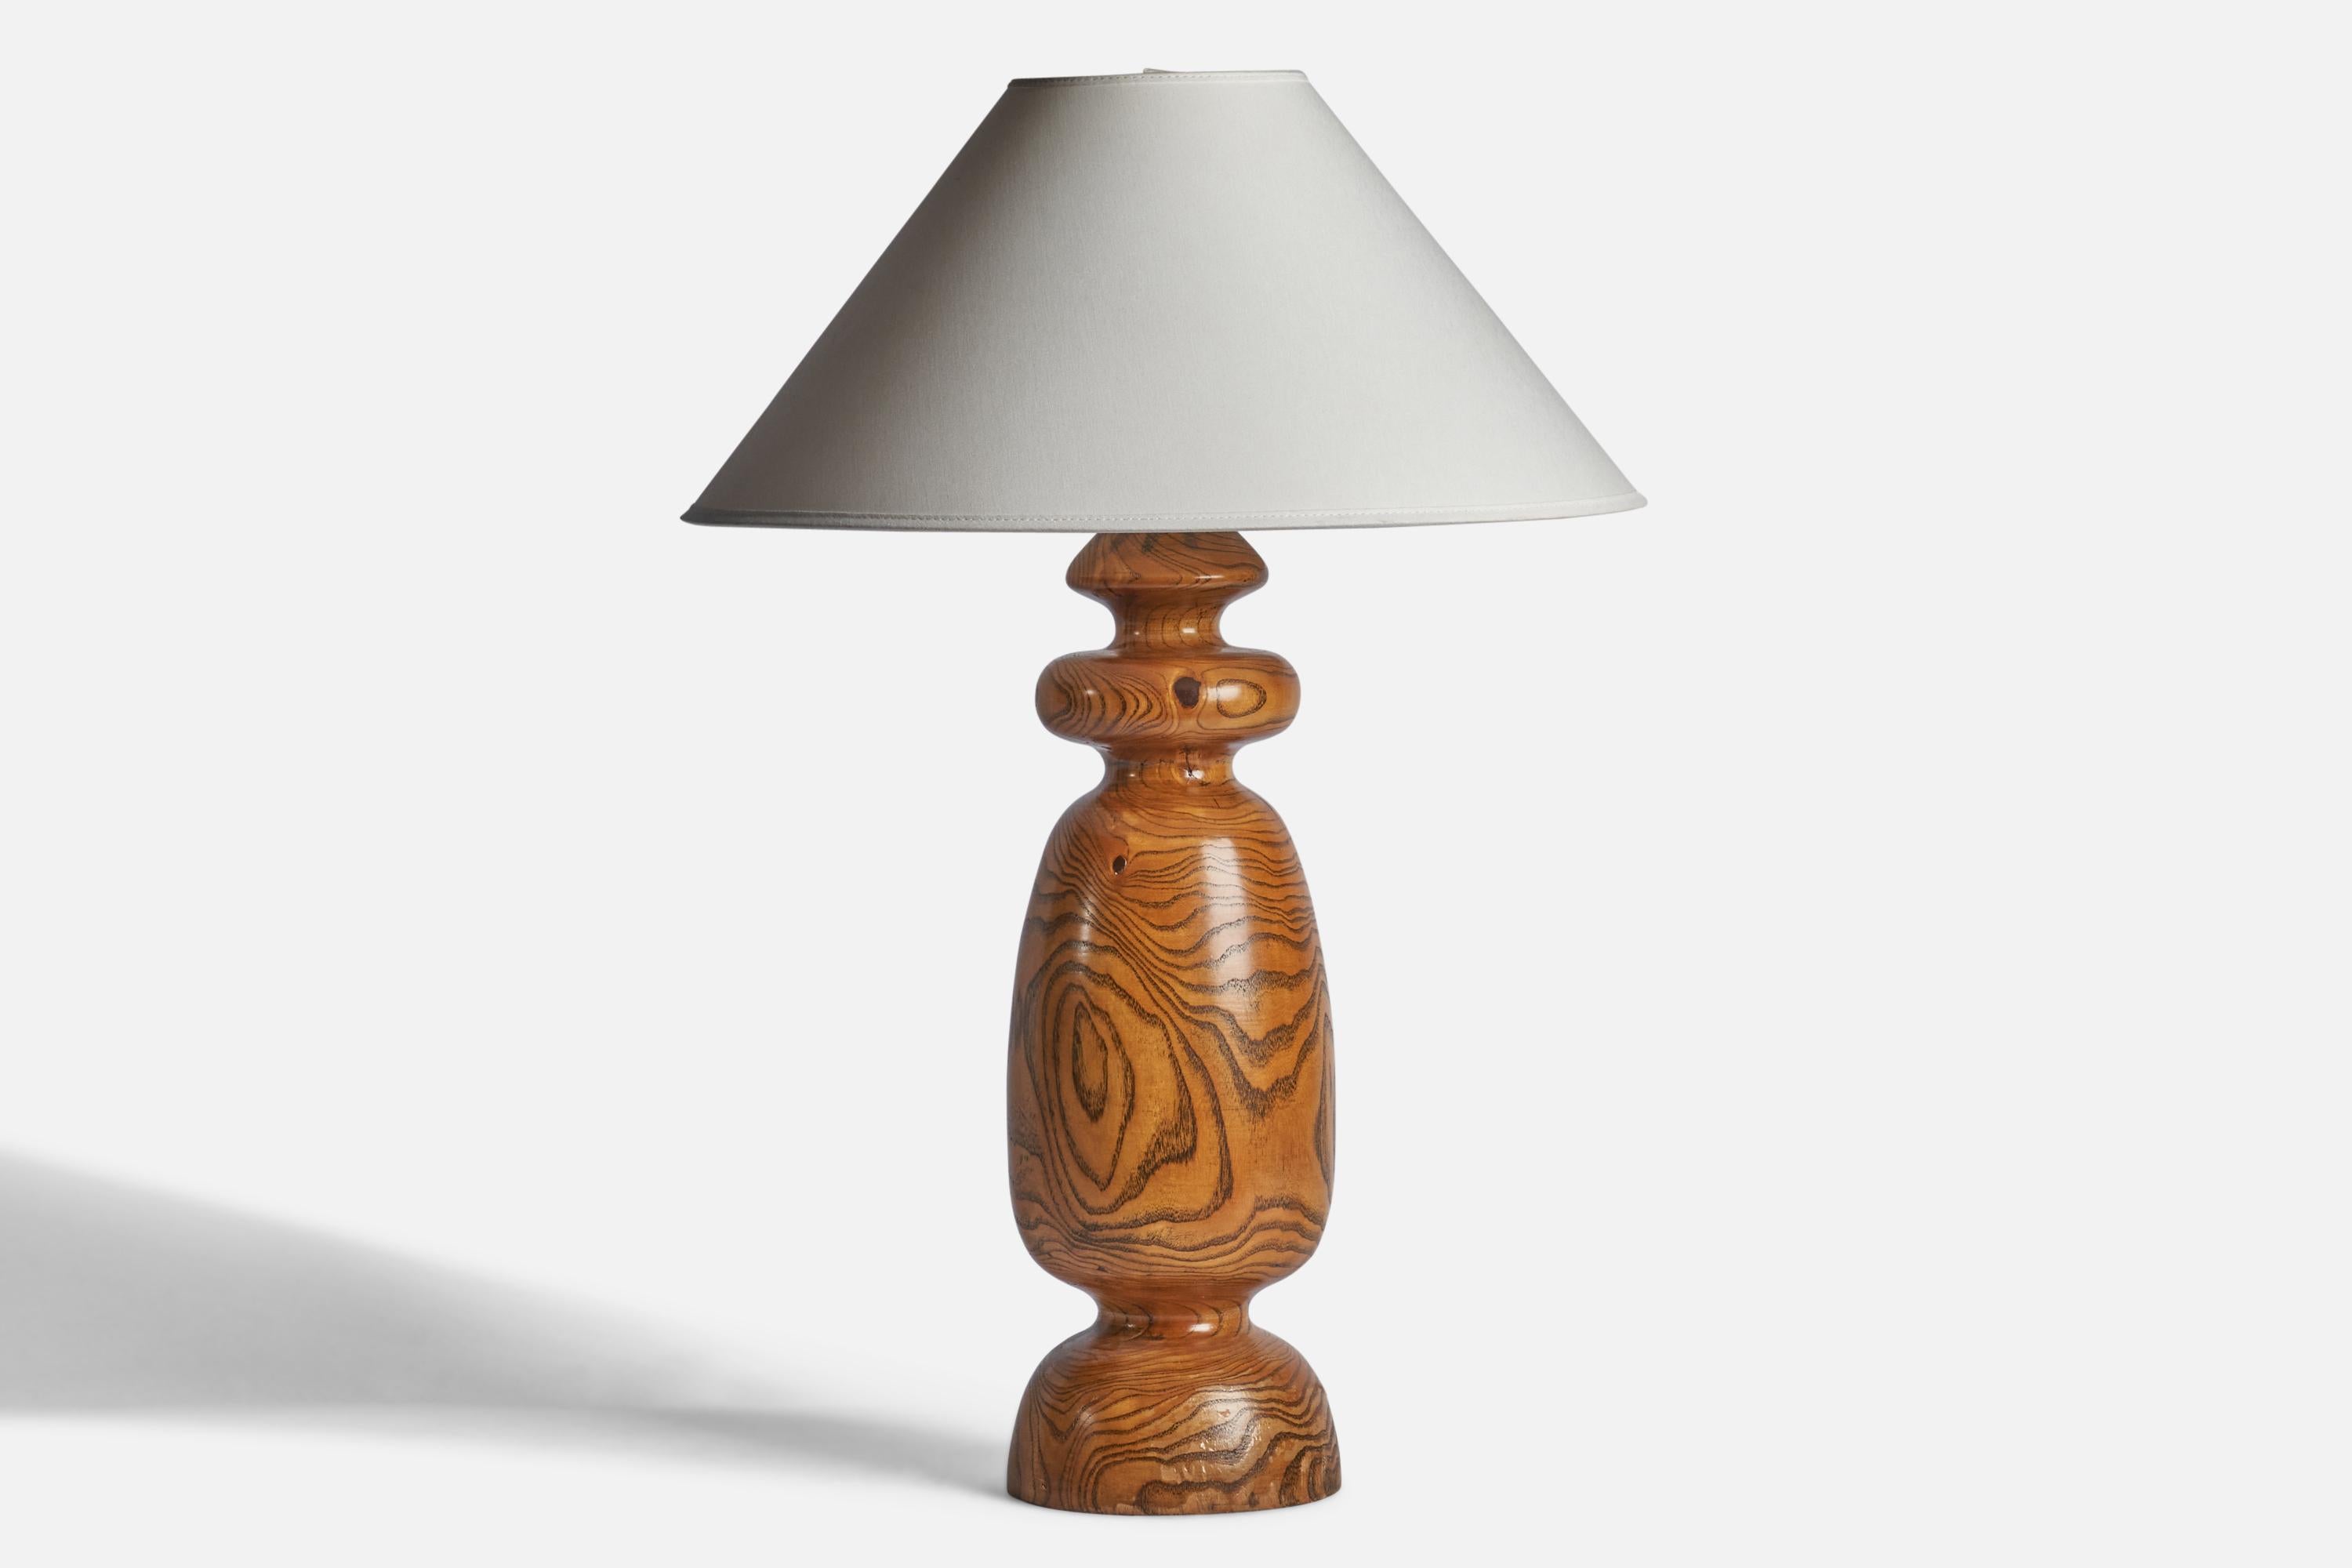 Lampe de table en pin tourné, conçue et produite aux États-Unis, vers les années 1950.

Dimensions de la lampe (pouces) : 19